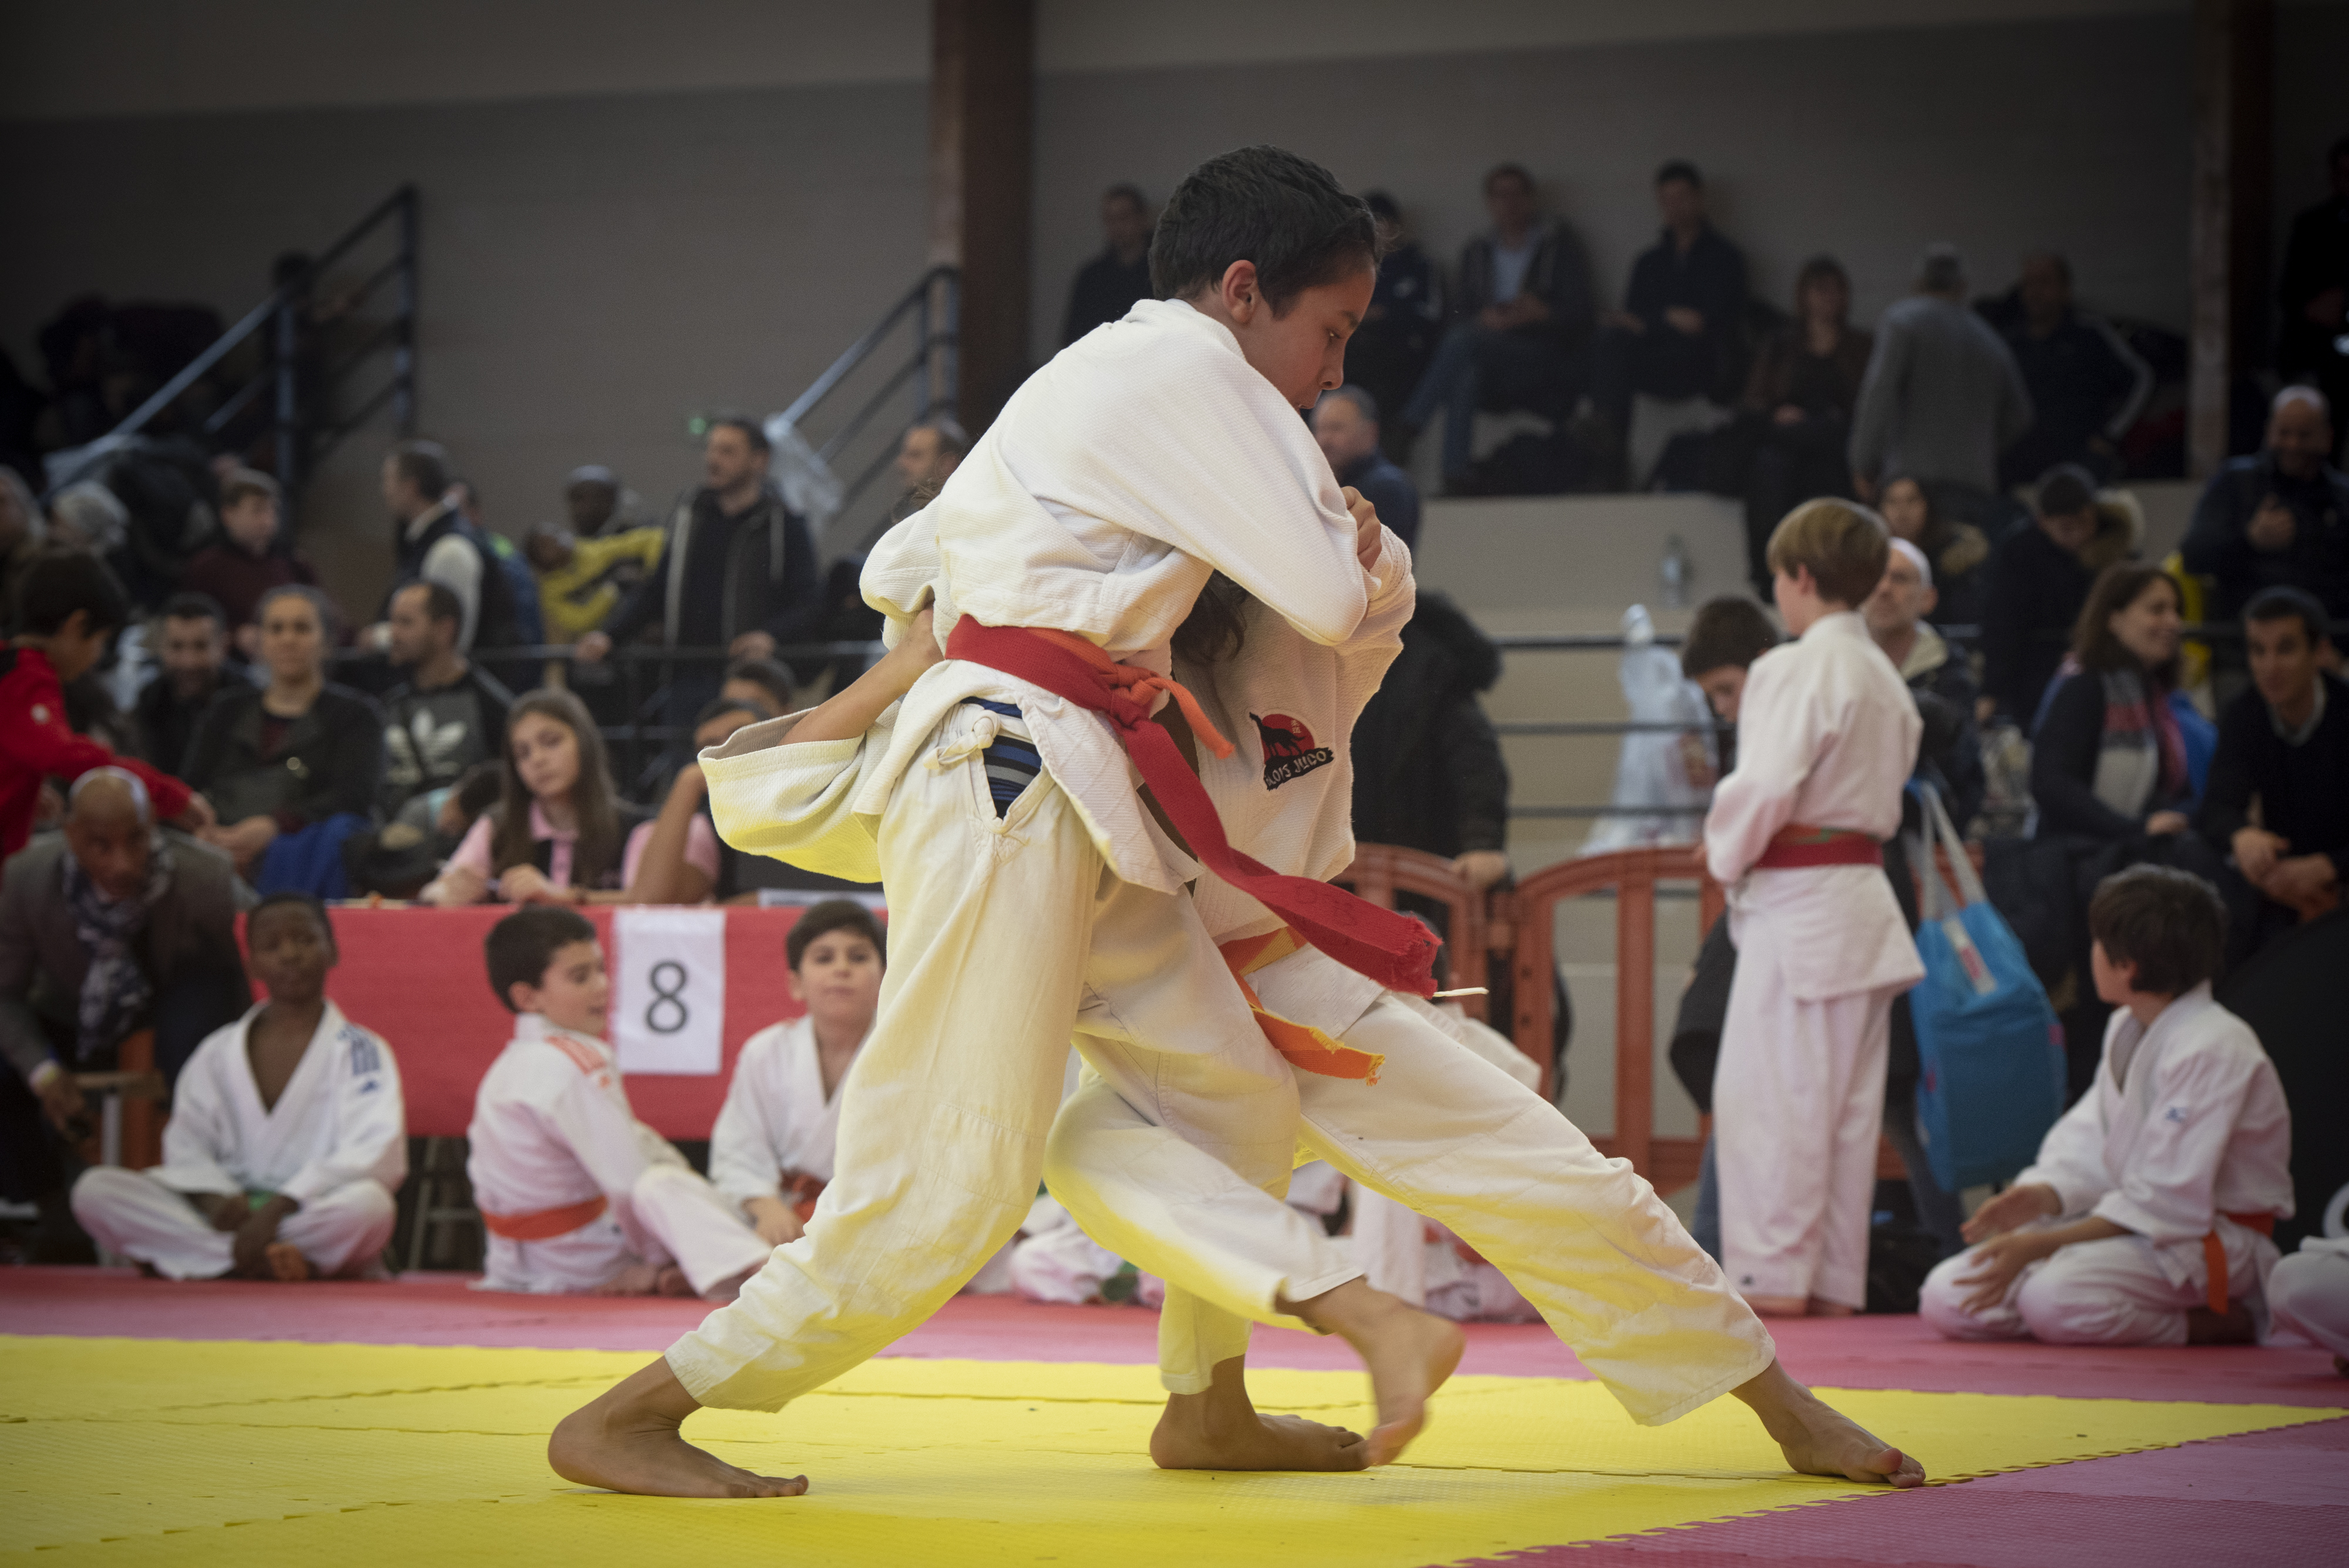 Compétition de judo Poussins-minimes gymnase Auguste Delaune, Montreuil